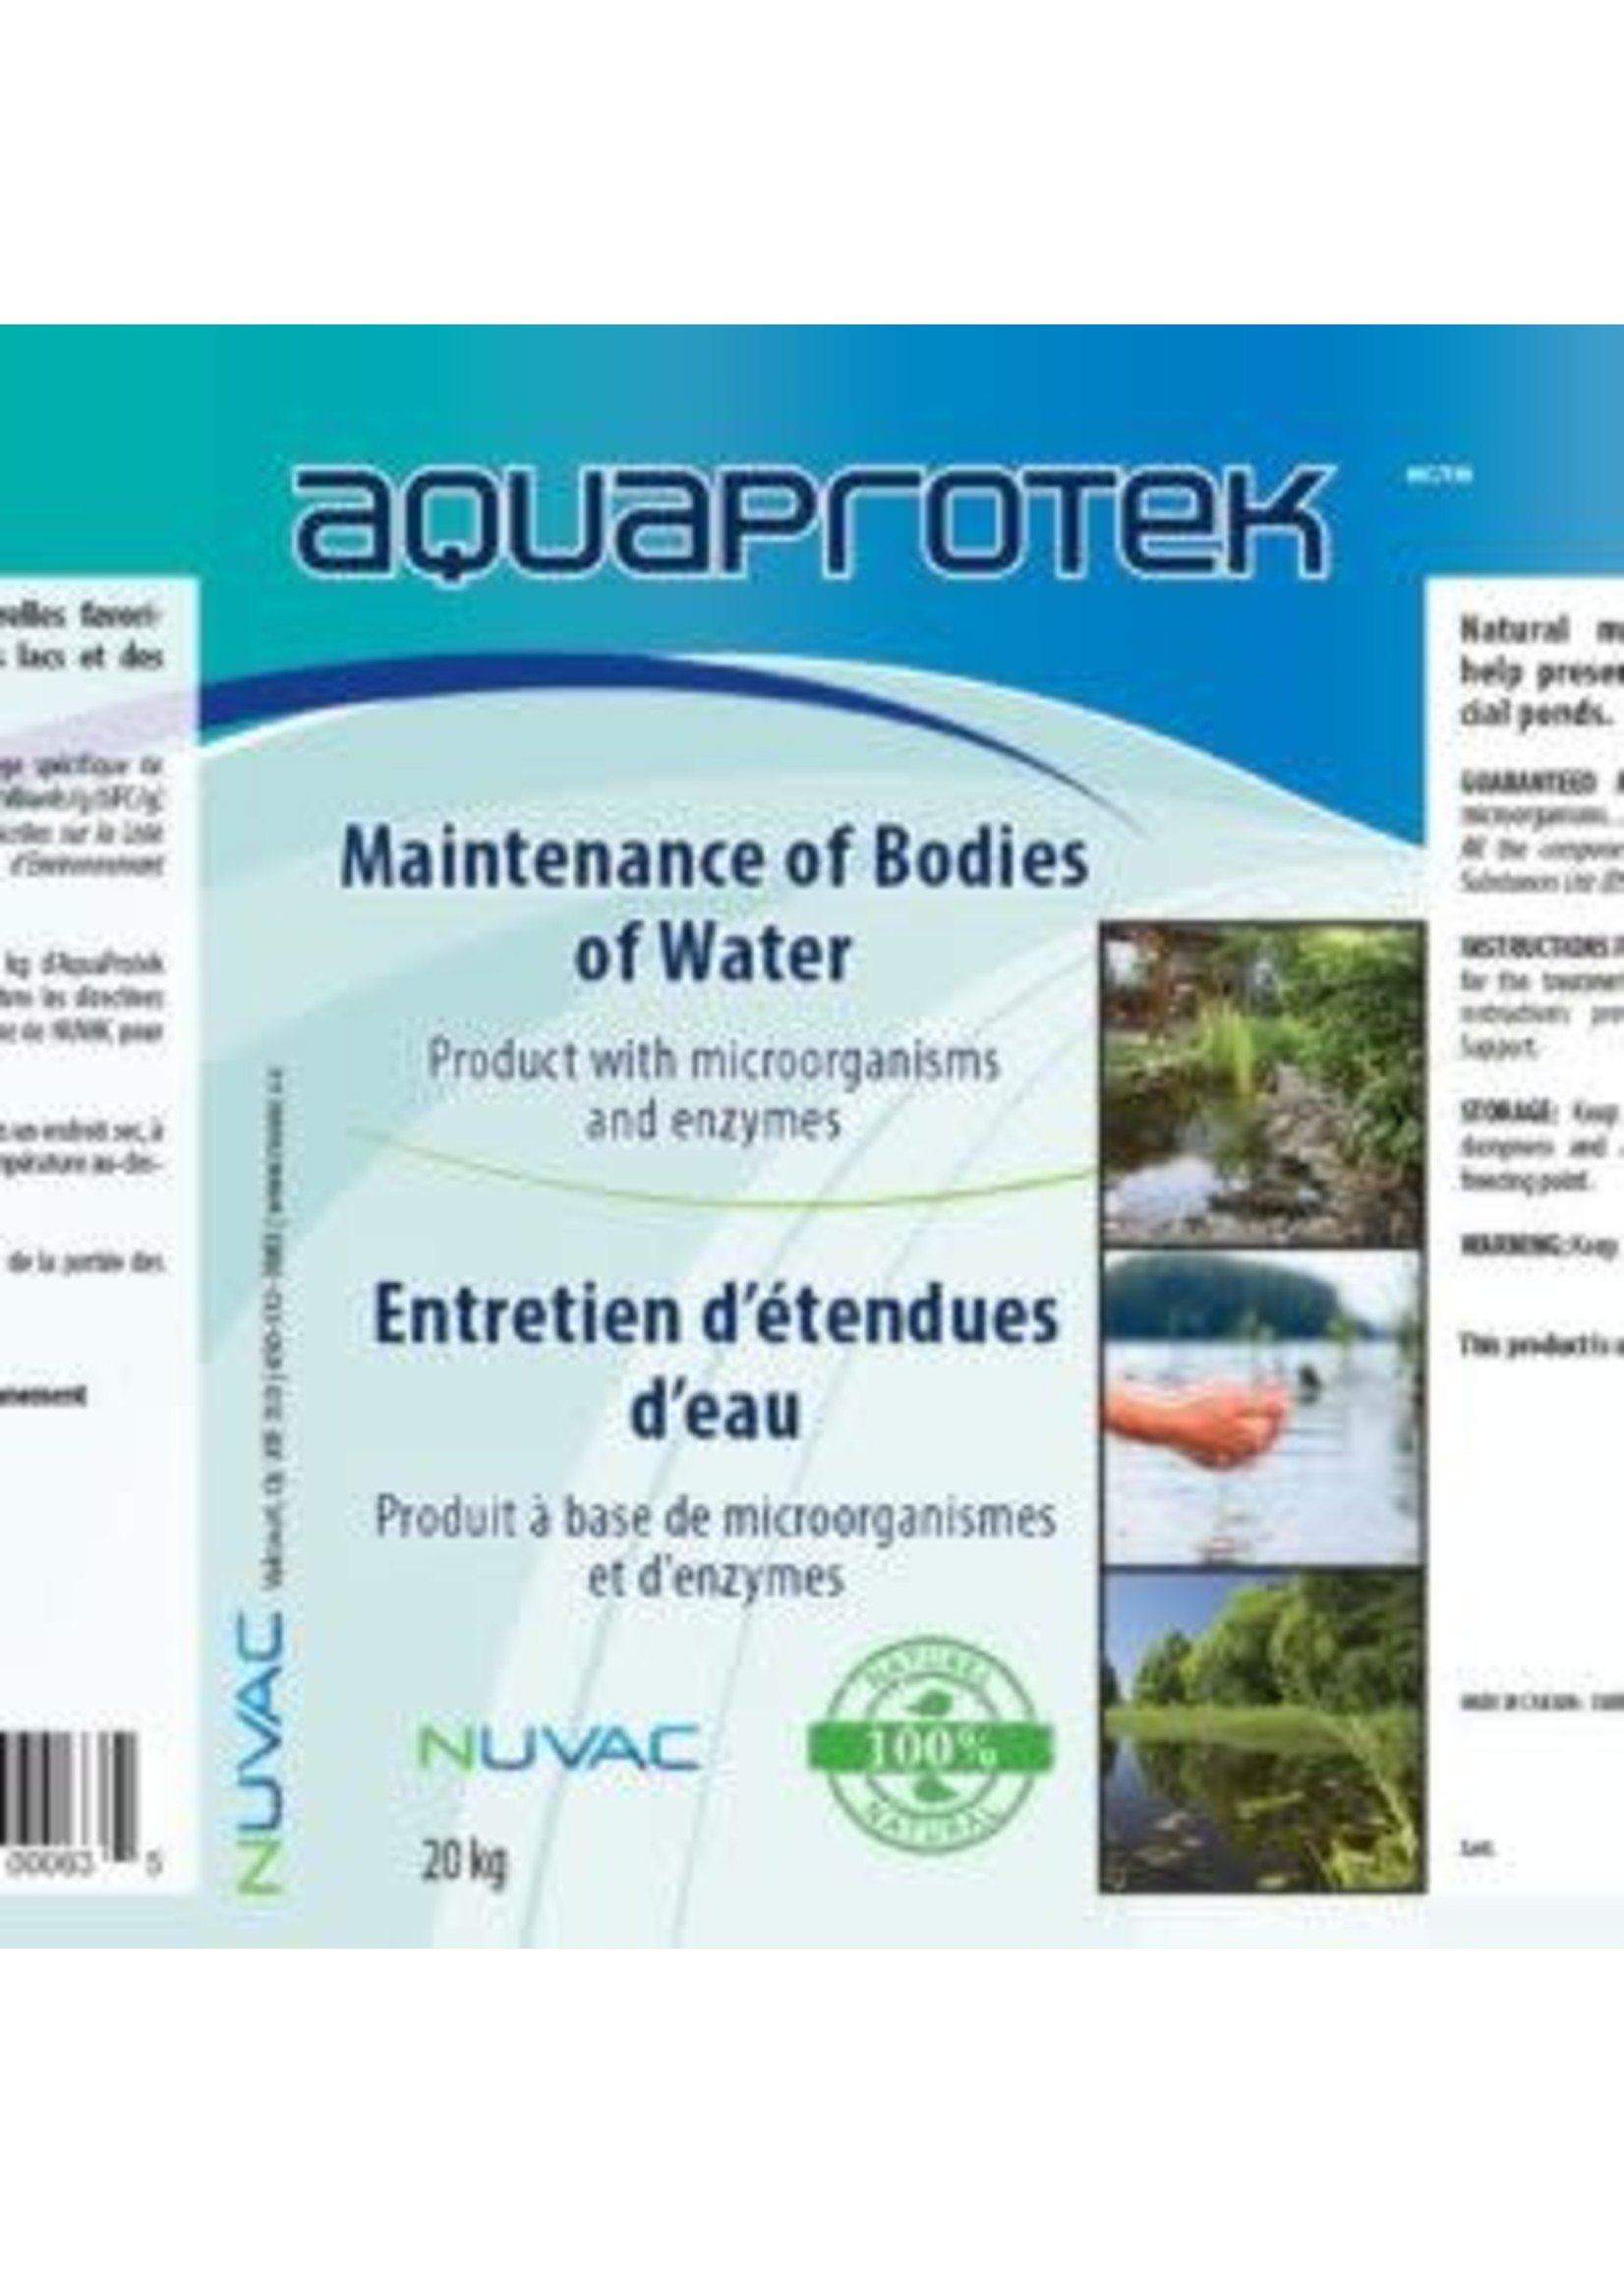 Nuvac Aquaproteck 28 g X 24